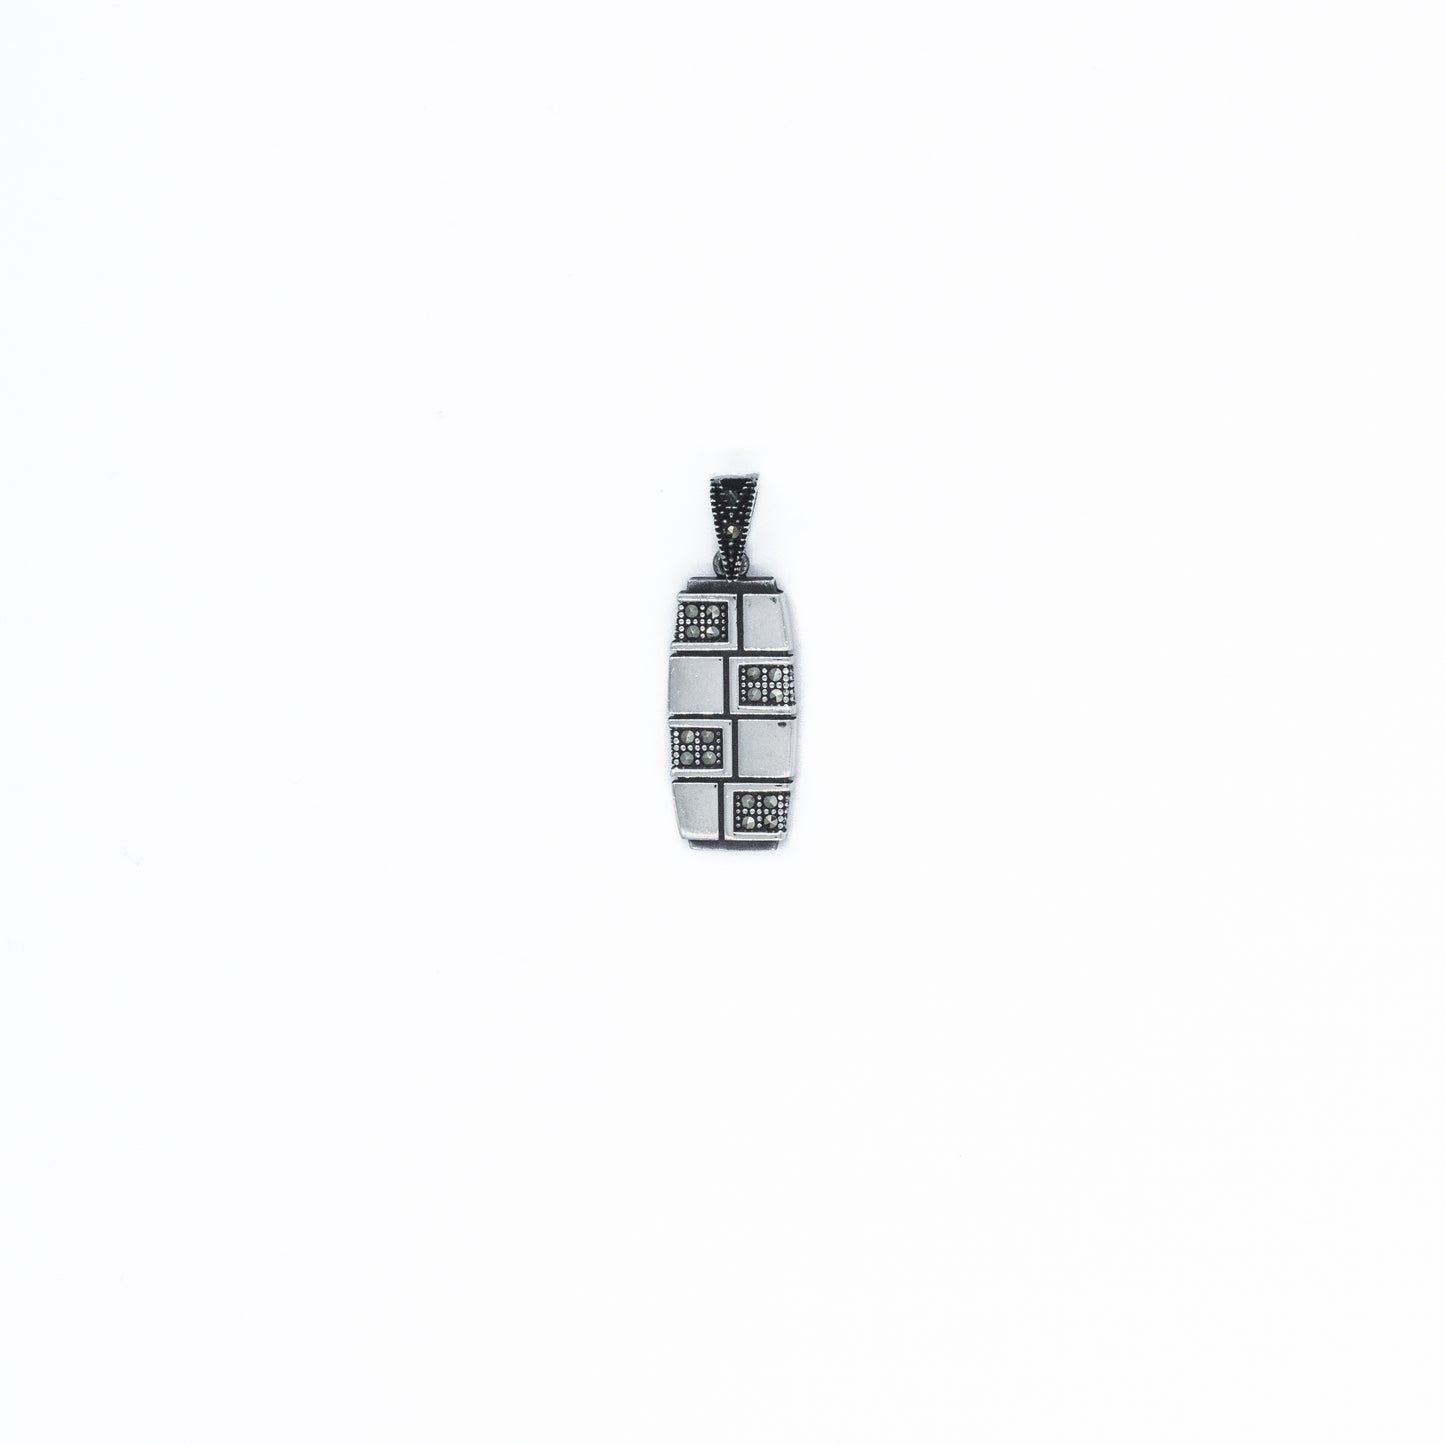 Silver Marcasite Enigma Pendant